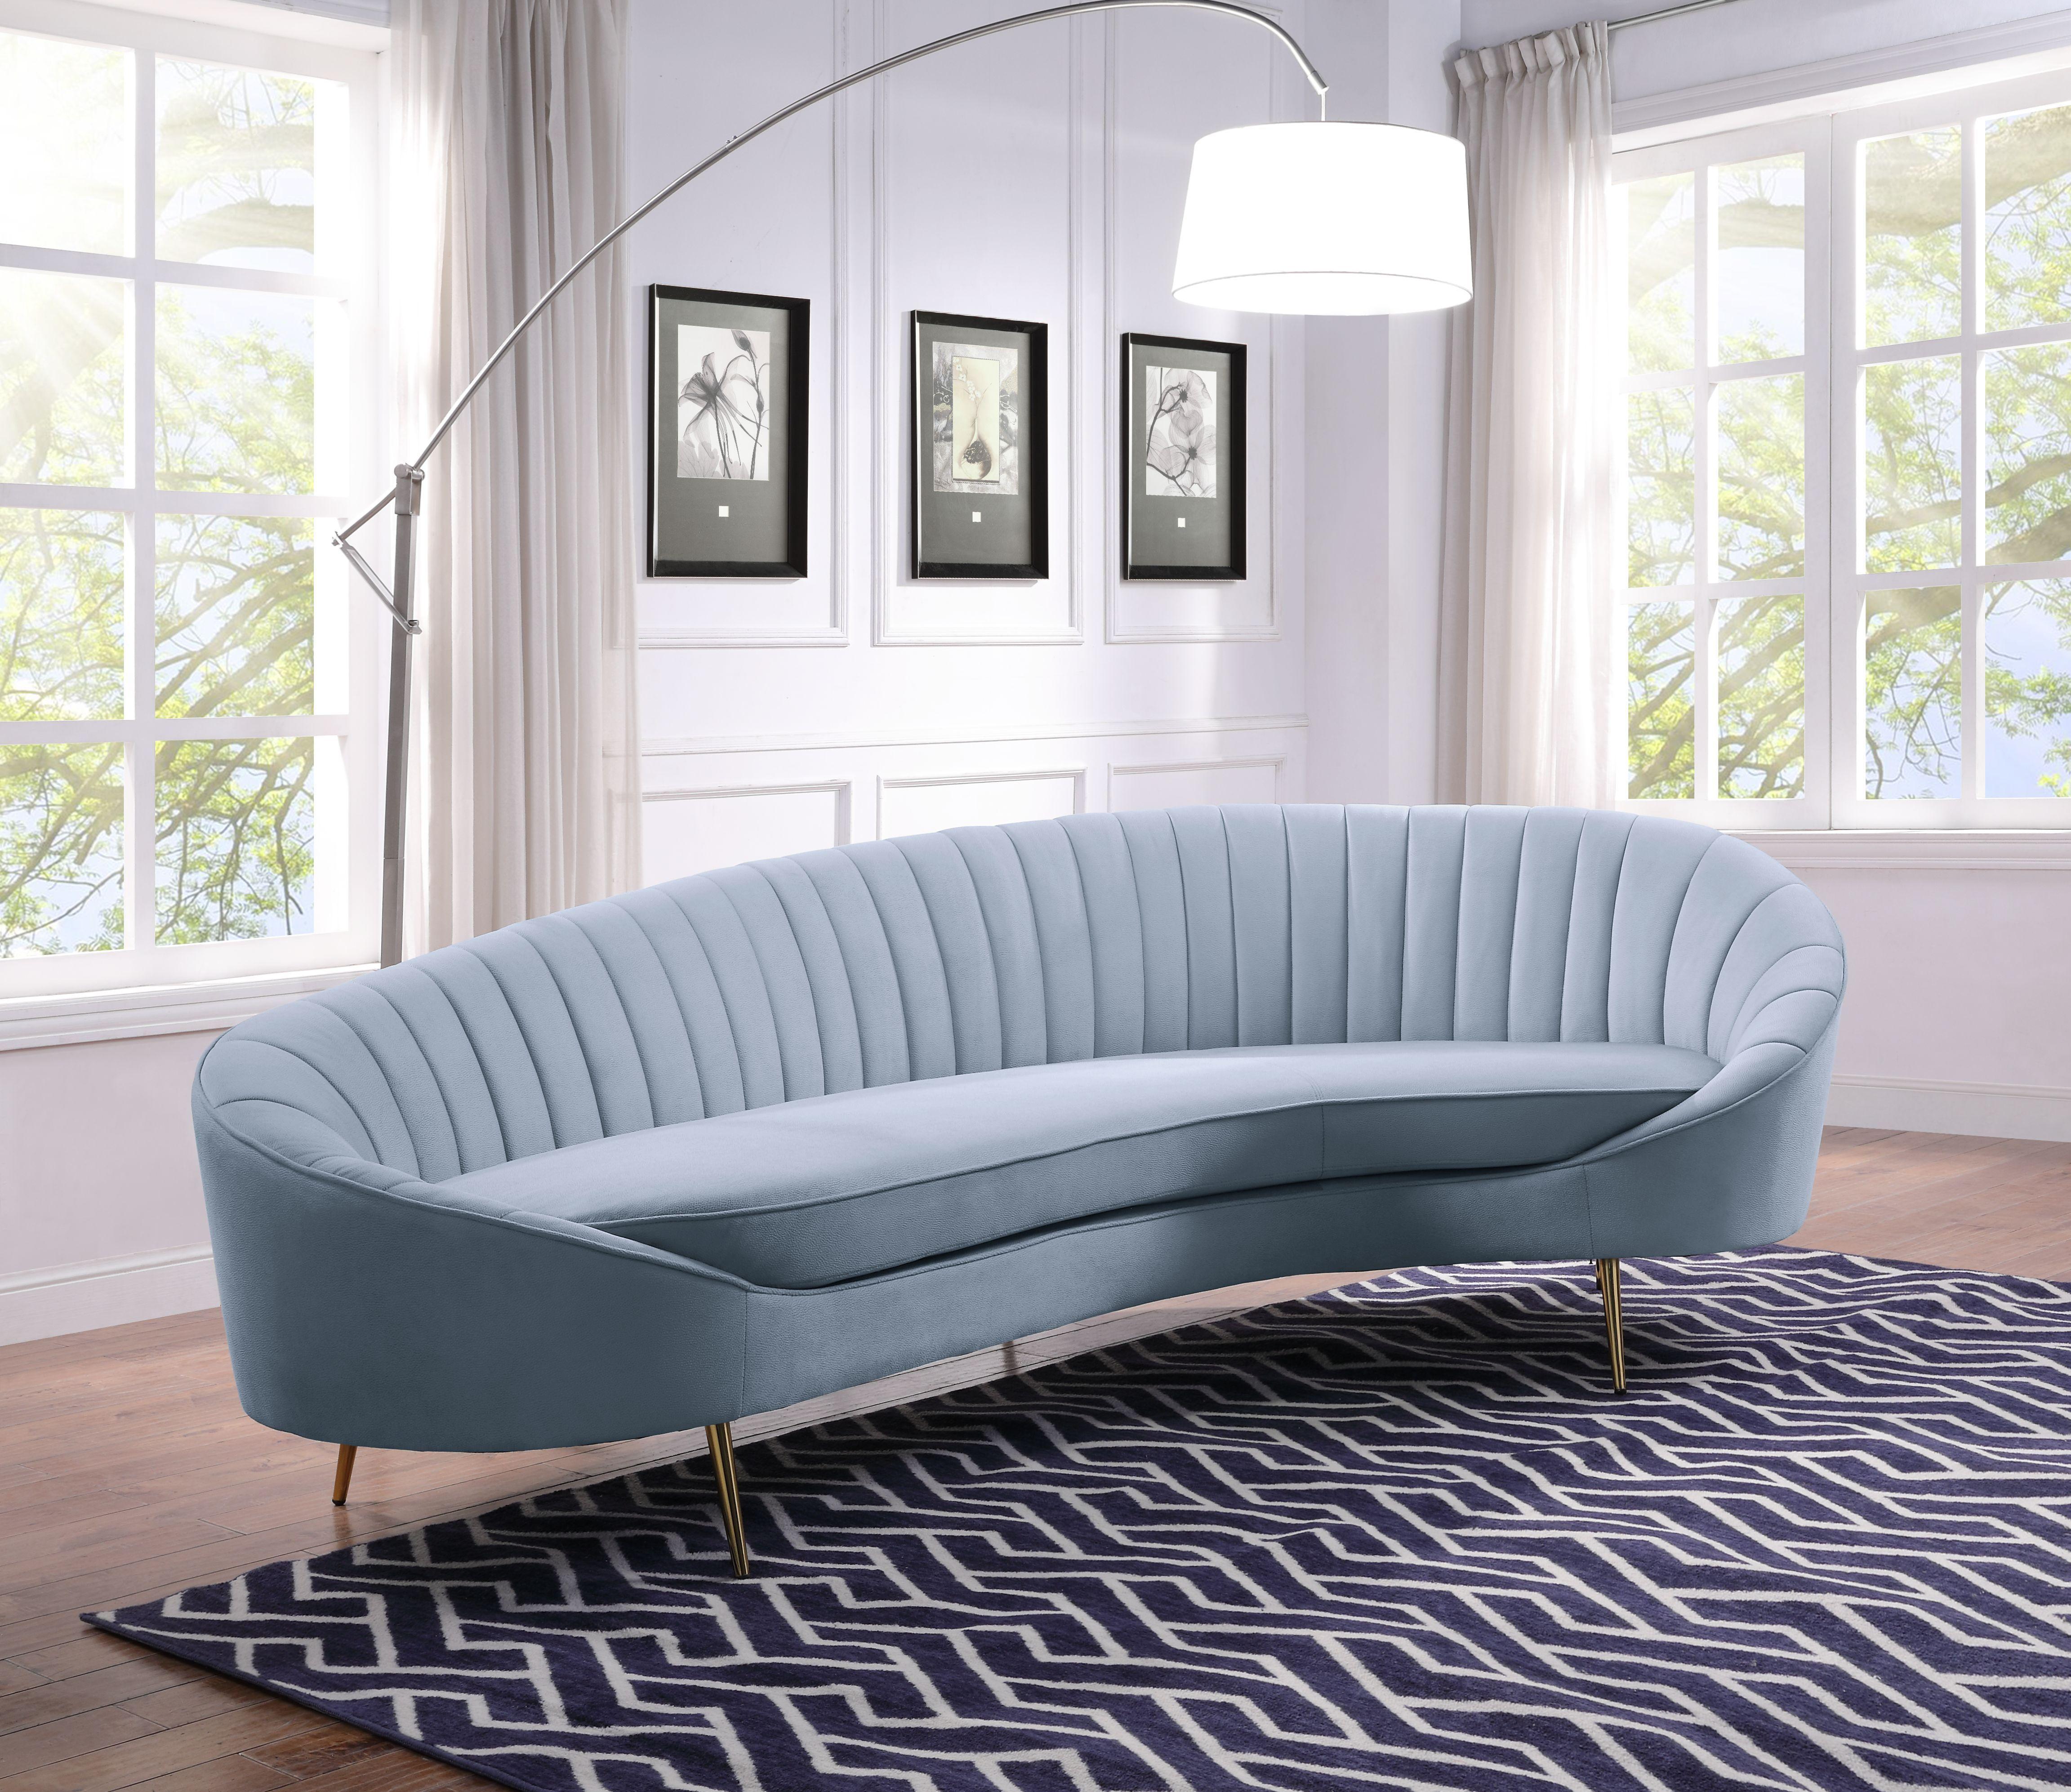 

    
LV00204 Acme Furniture Sofa
